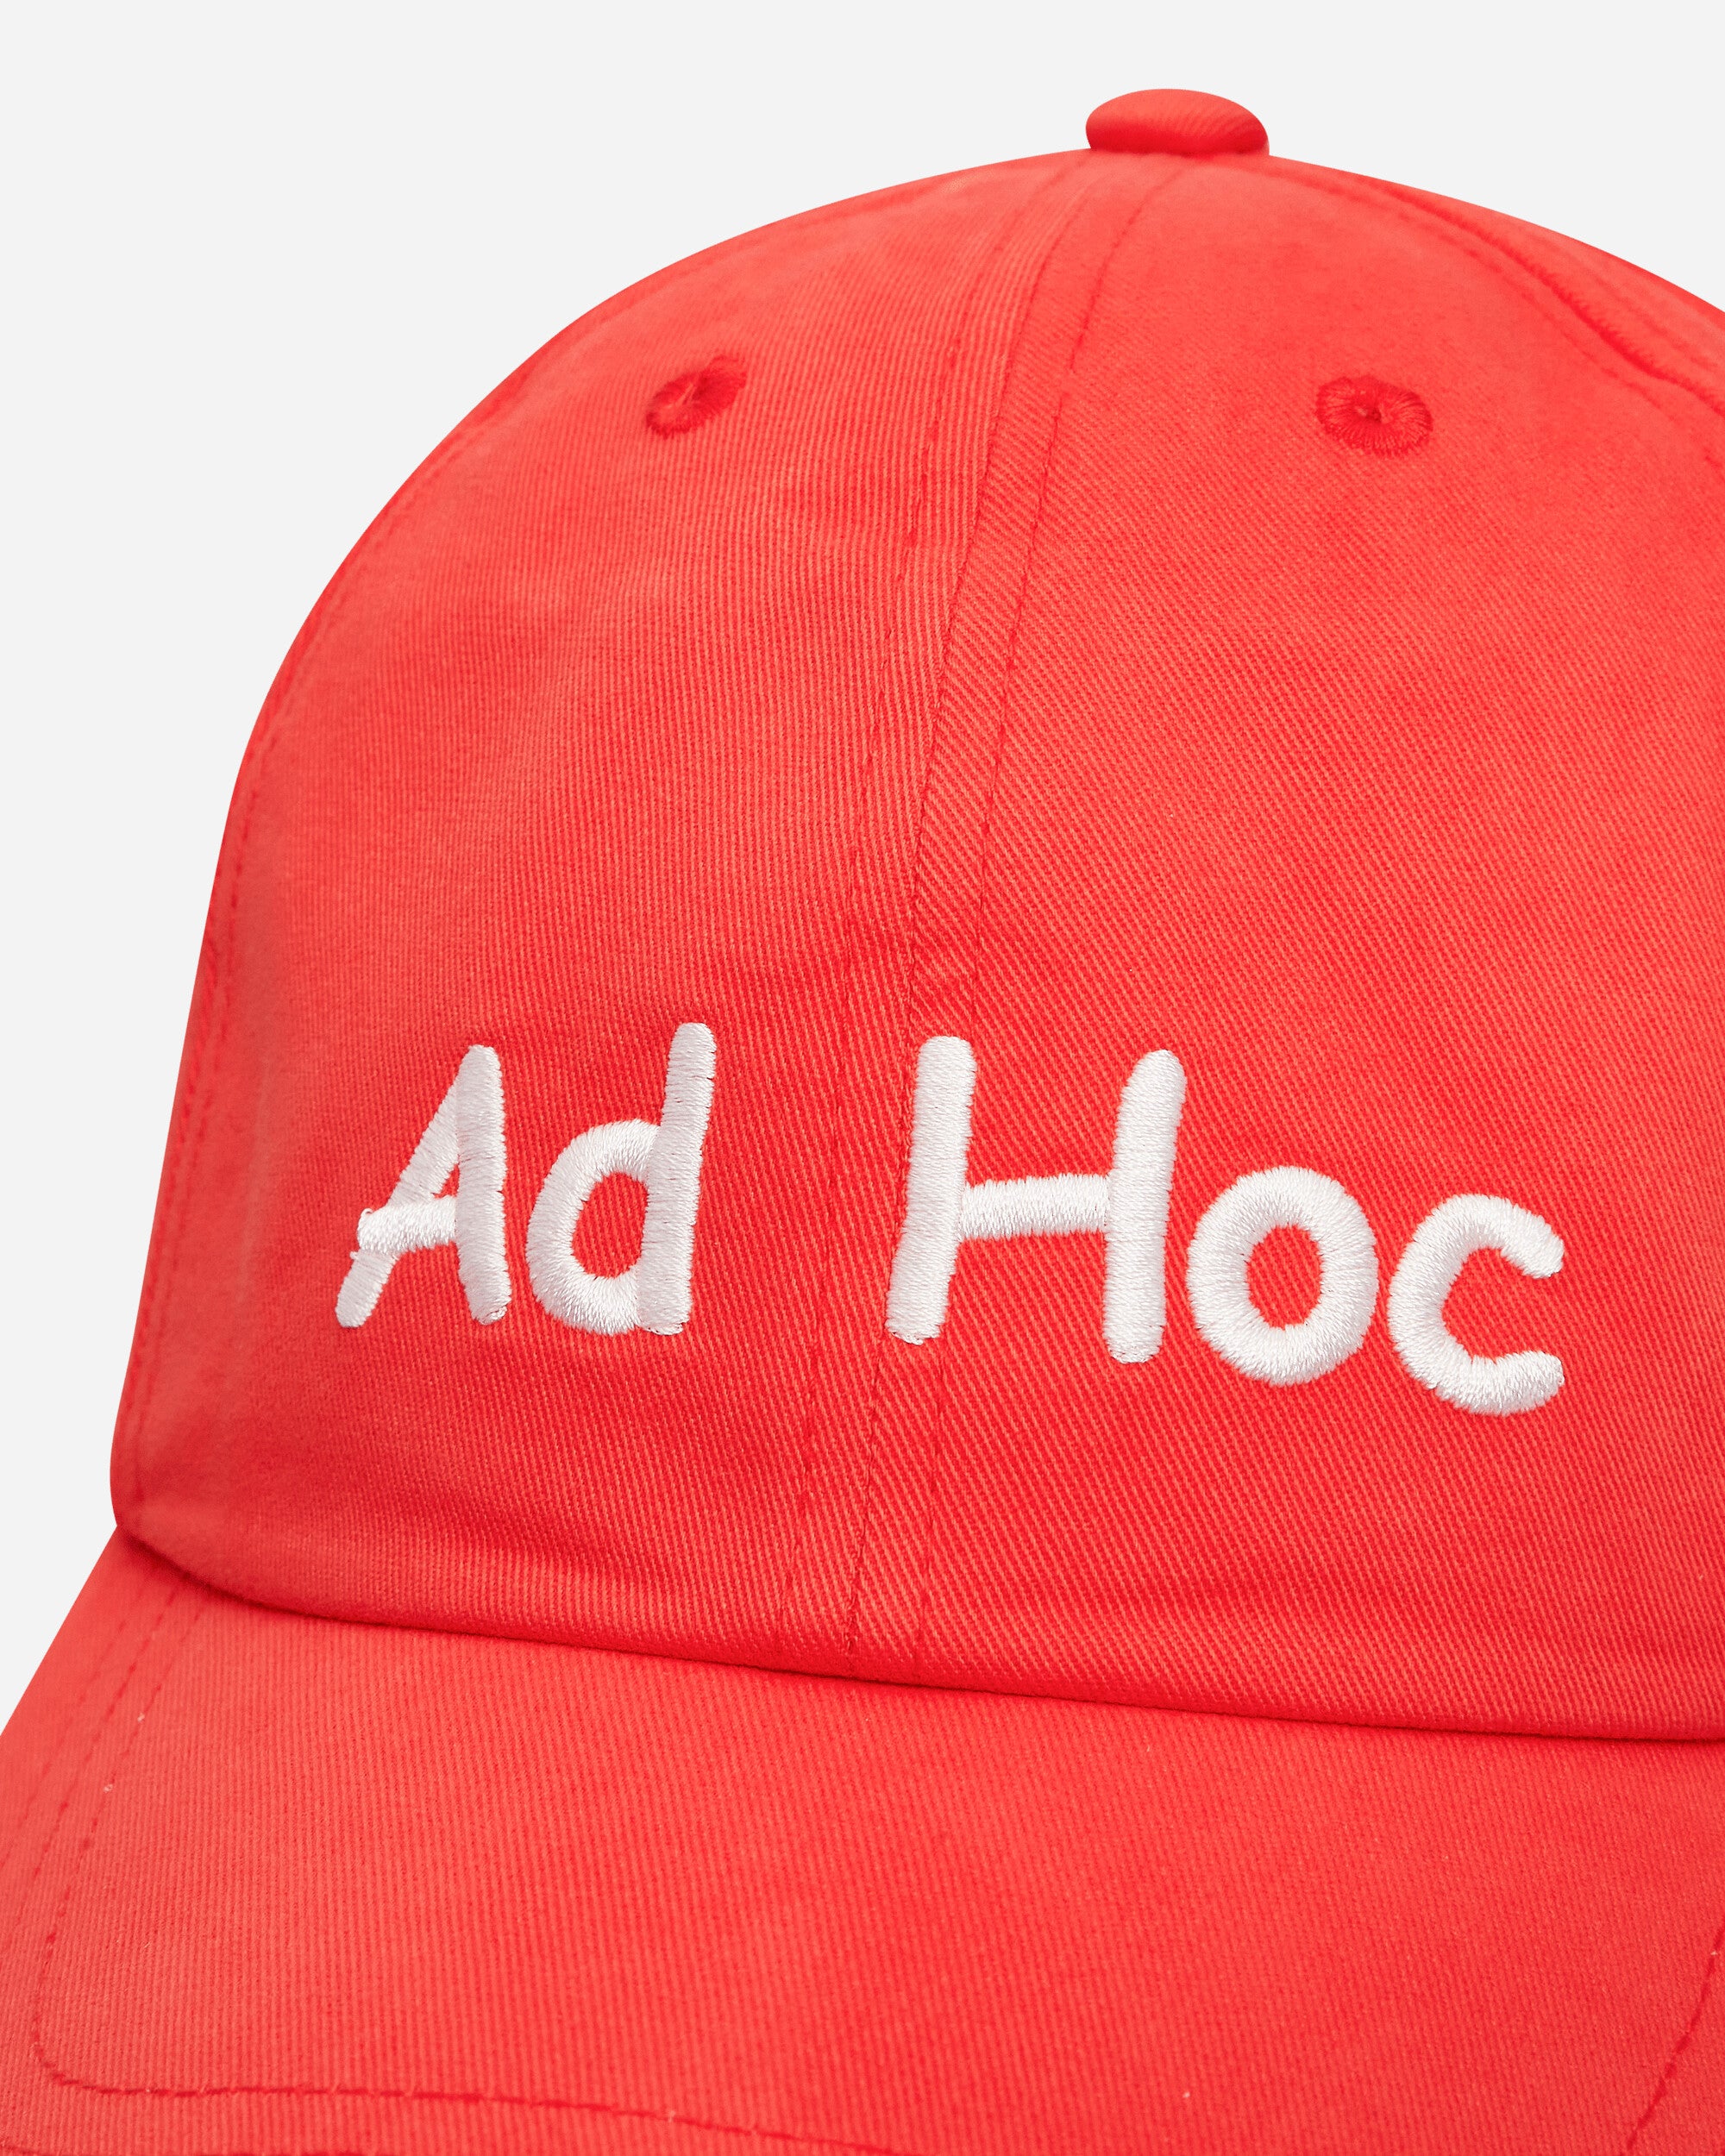 Public Possession "Ad Hoc" Cap Bright Red Hats Caps PPMODA24-019  1